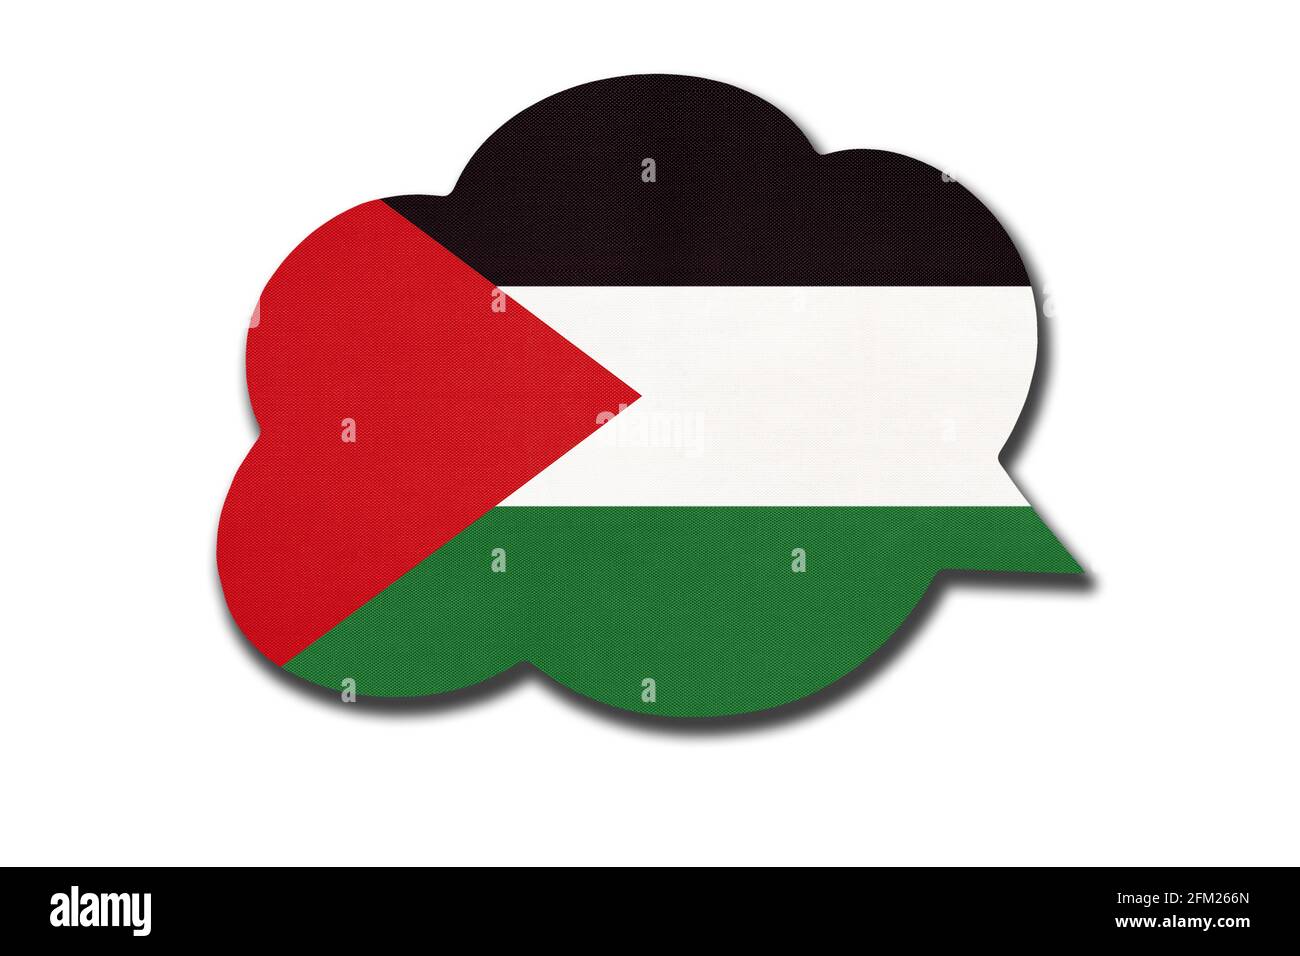 36,669 imágenes, fotos de stock, objetos en 3D y vectores sobre Palestinian  flag